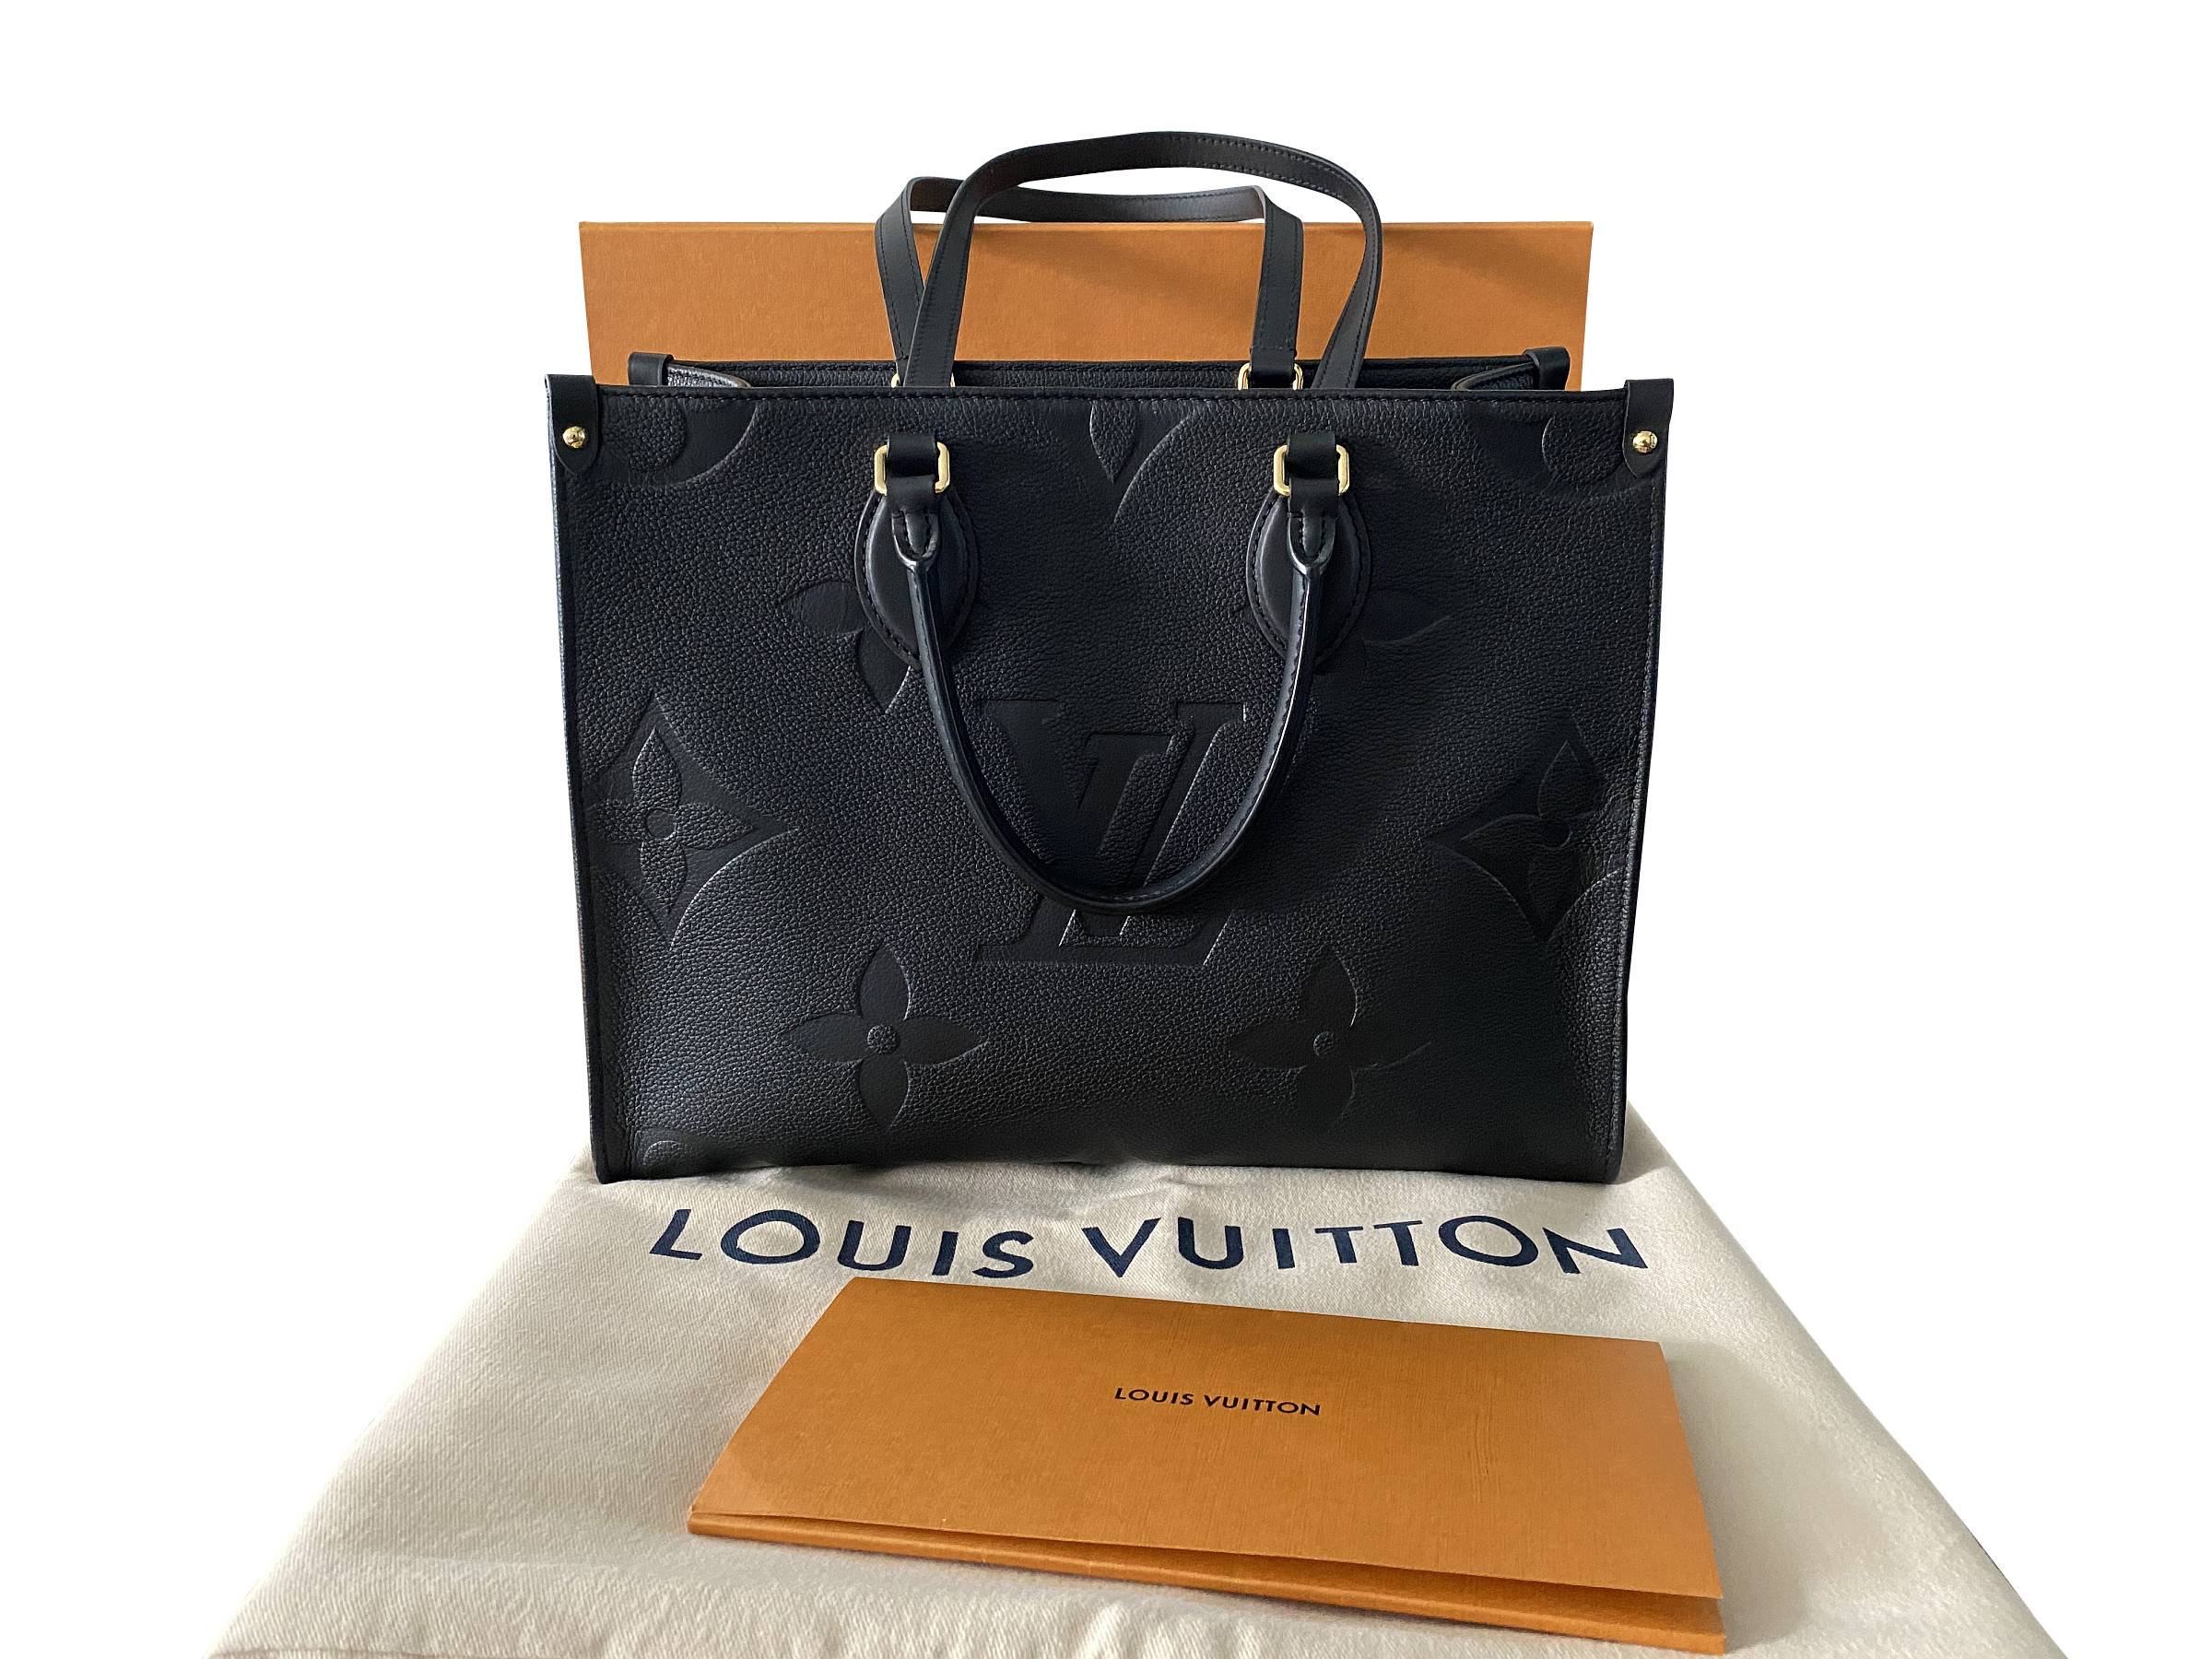 VERKAUFT - Louis Vuitton Onthego MM Giant Empreinte Leder M45595